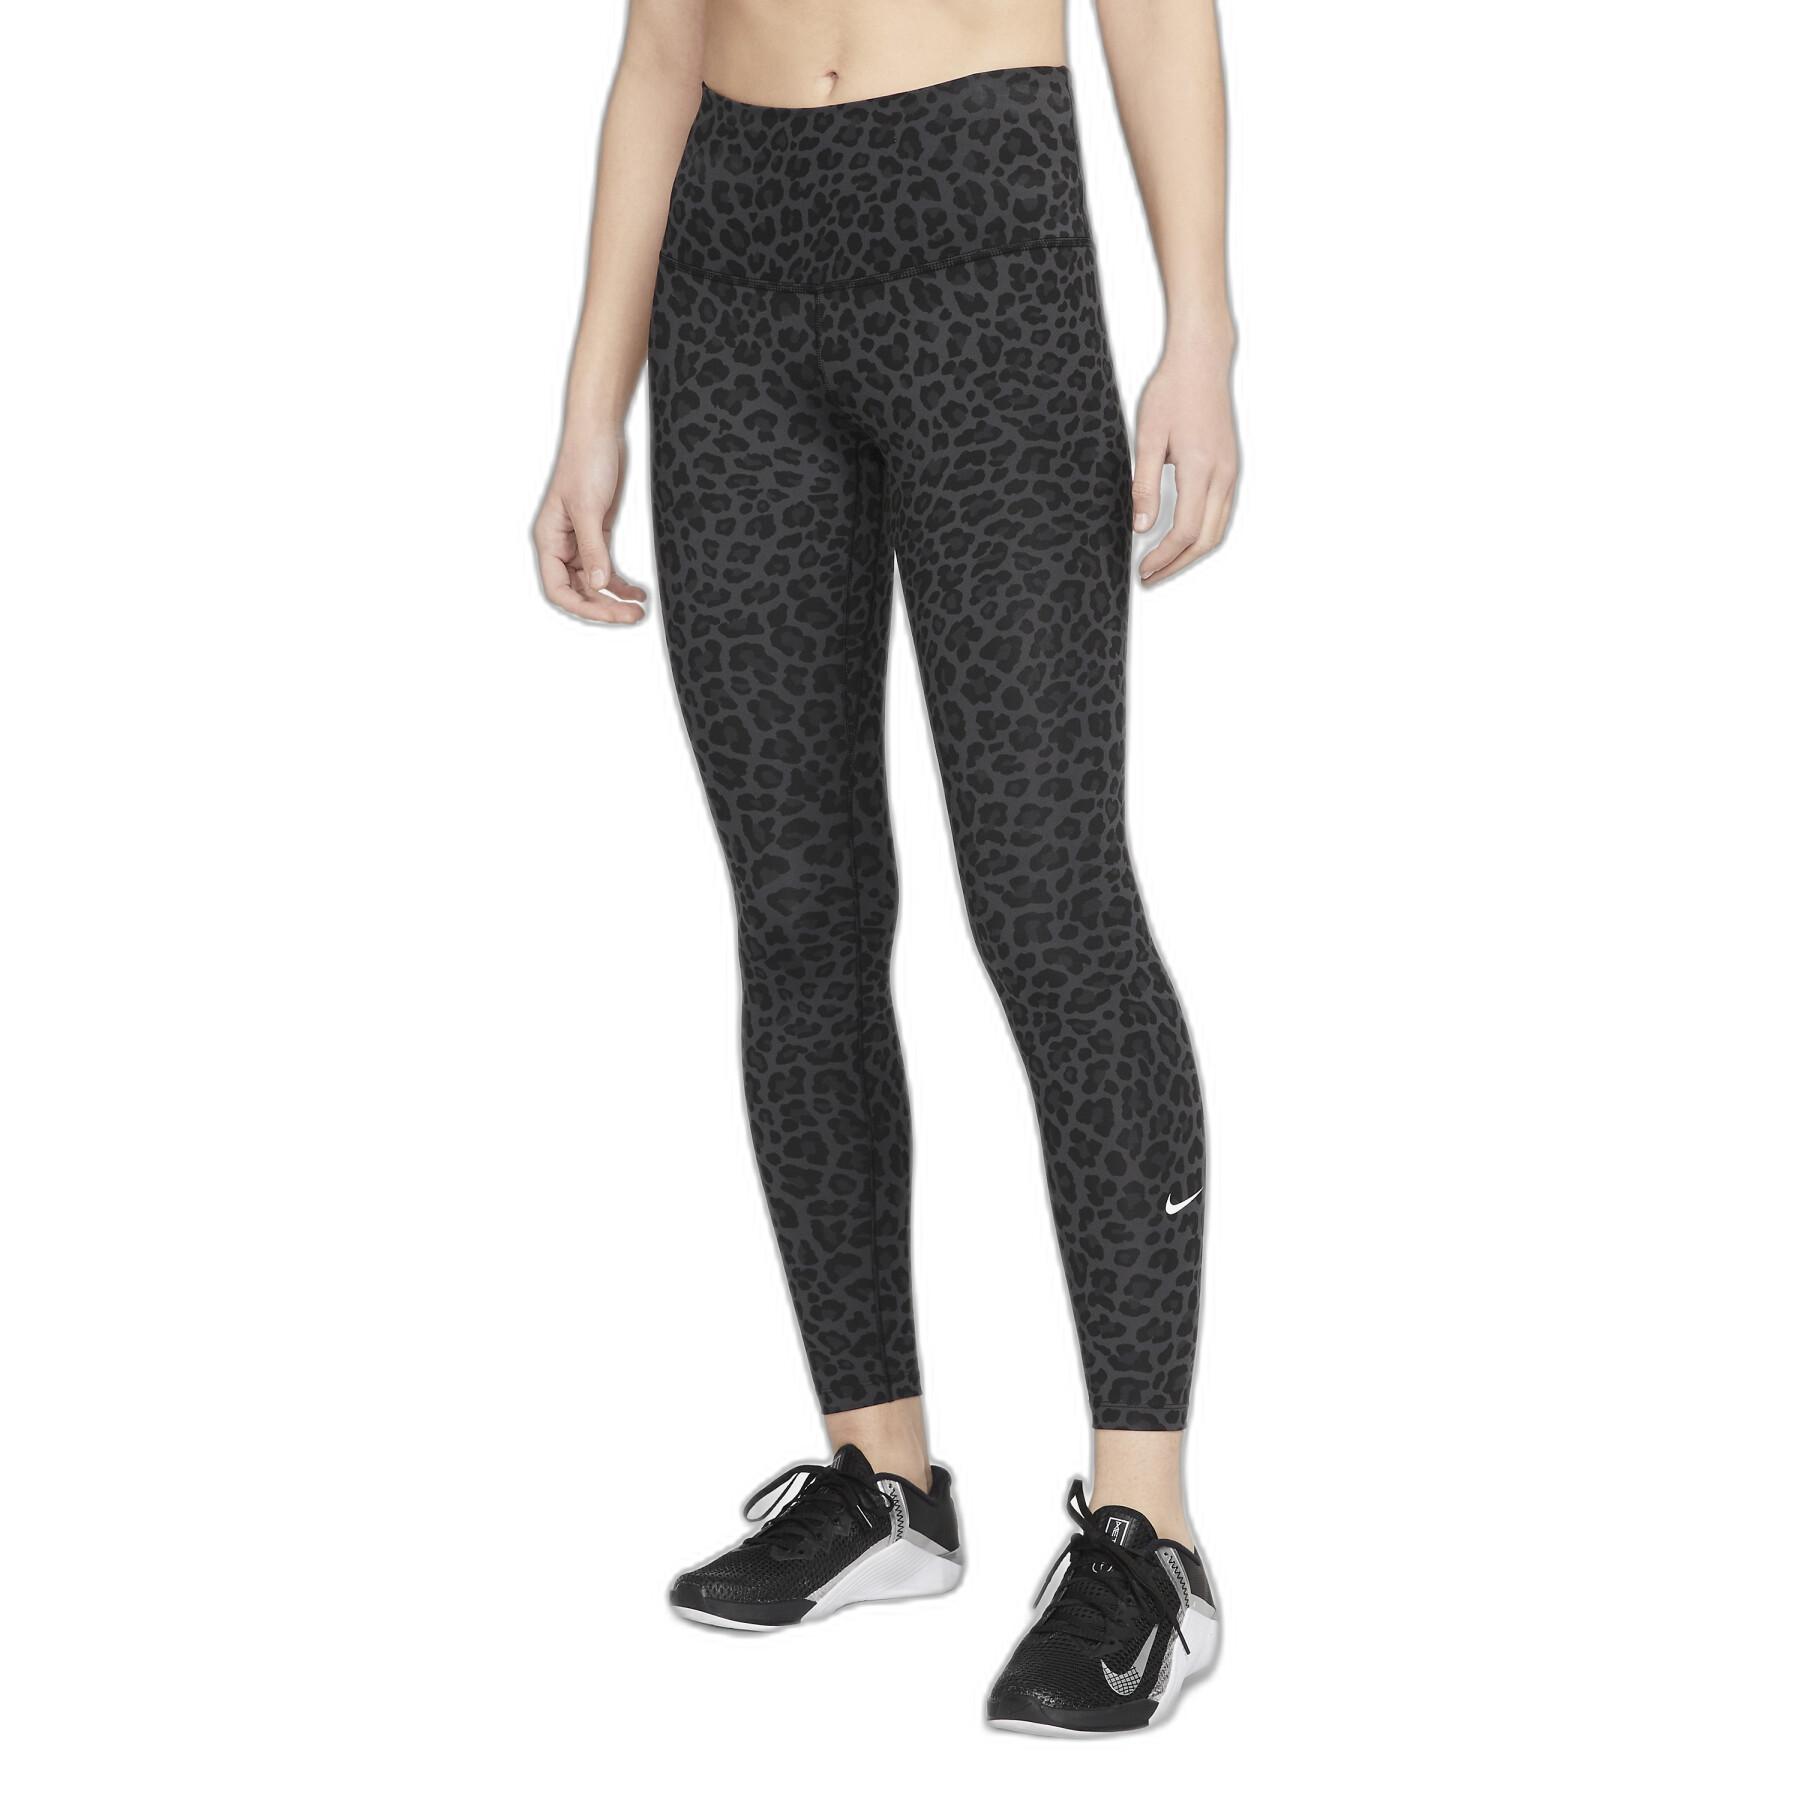 Leggings Damen Nike One Dri-Fit HR Leopard - Hosen / Leggings -  Damenbekleidung - Fitness